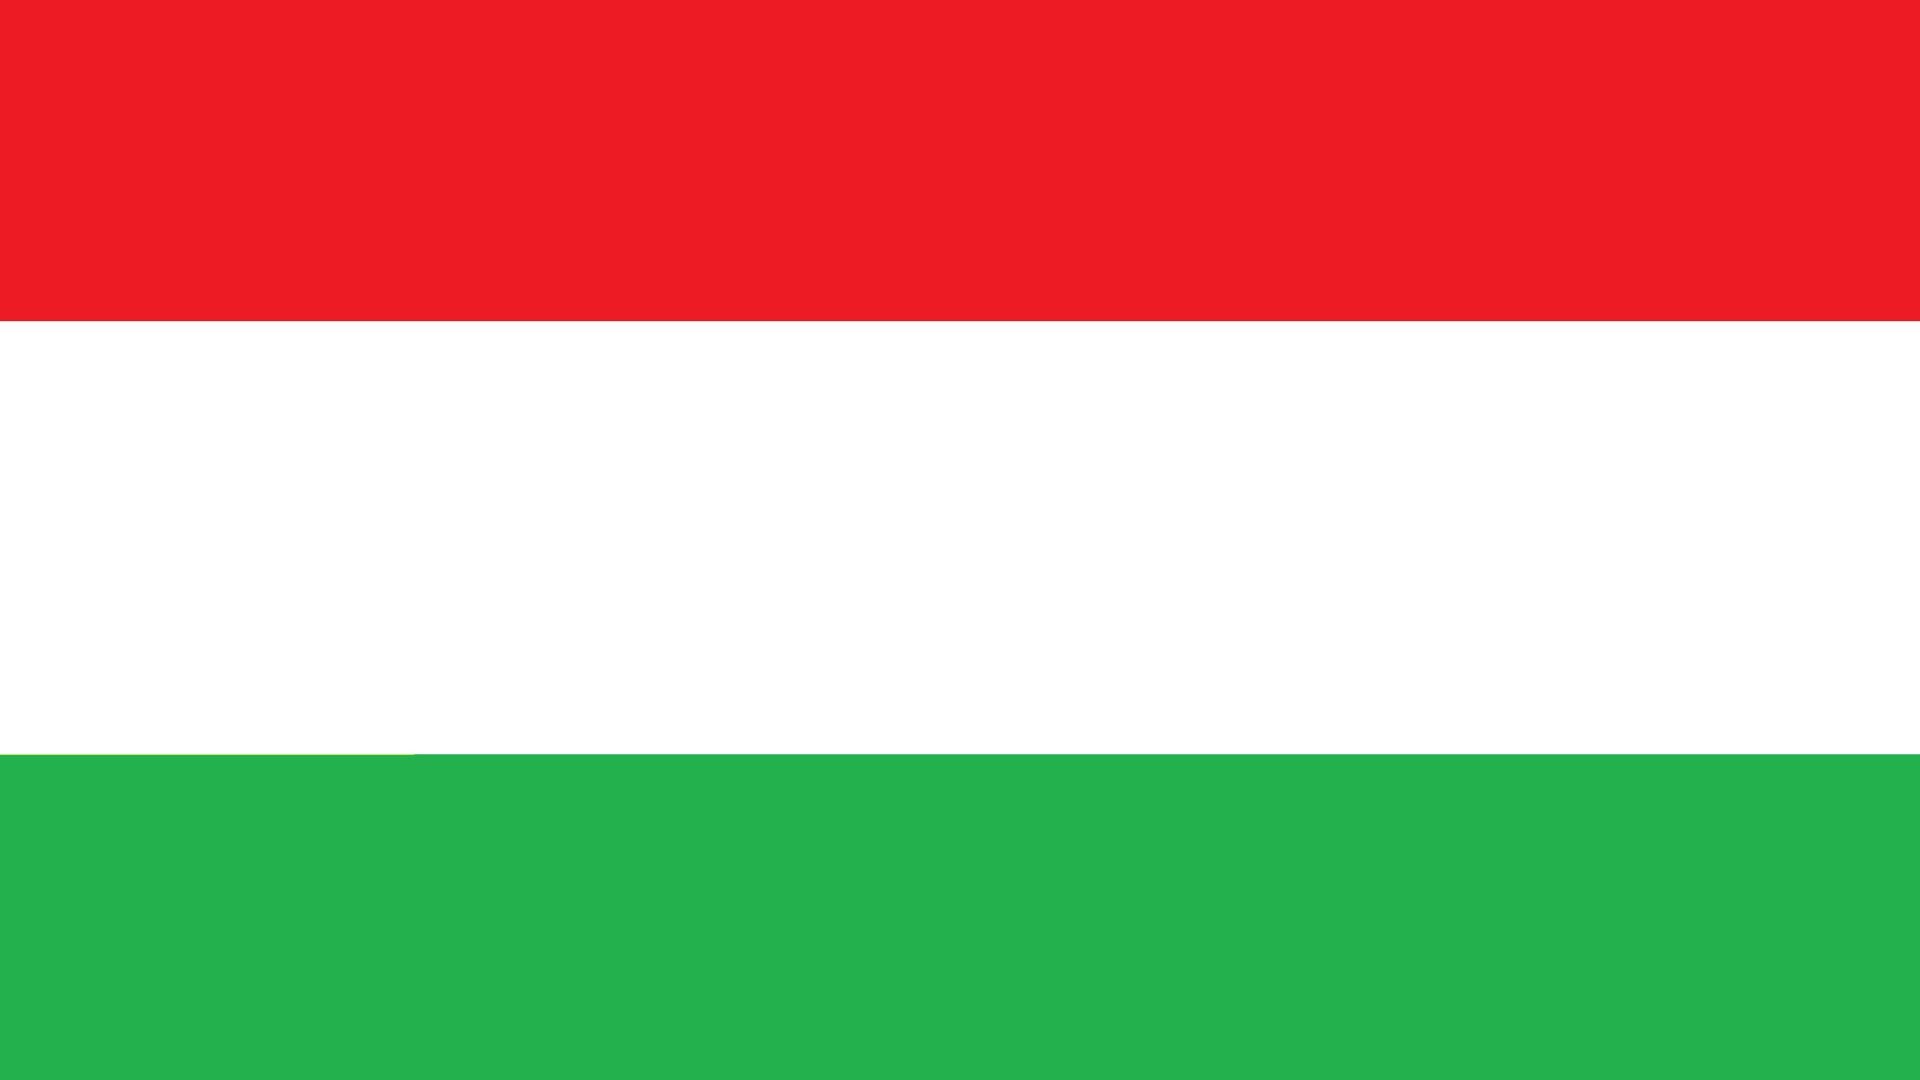 A bandeira da Hungria é uma tricolor horizontal de vermelho, branco e verde. A cor vermelha simboliza 'força', o branco simboliza 'fidelidade' e o verde simboliza 'esperança'.